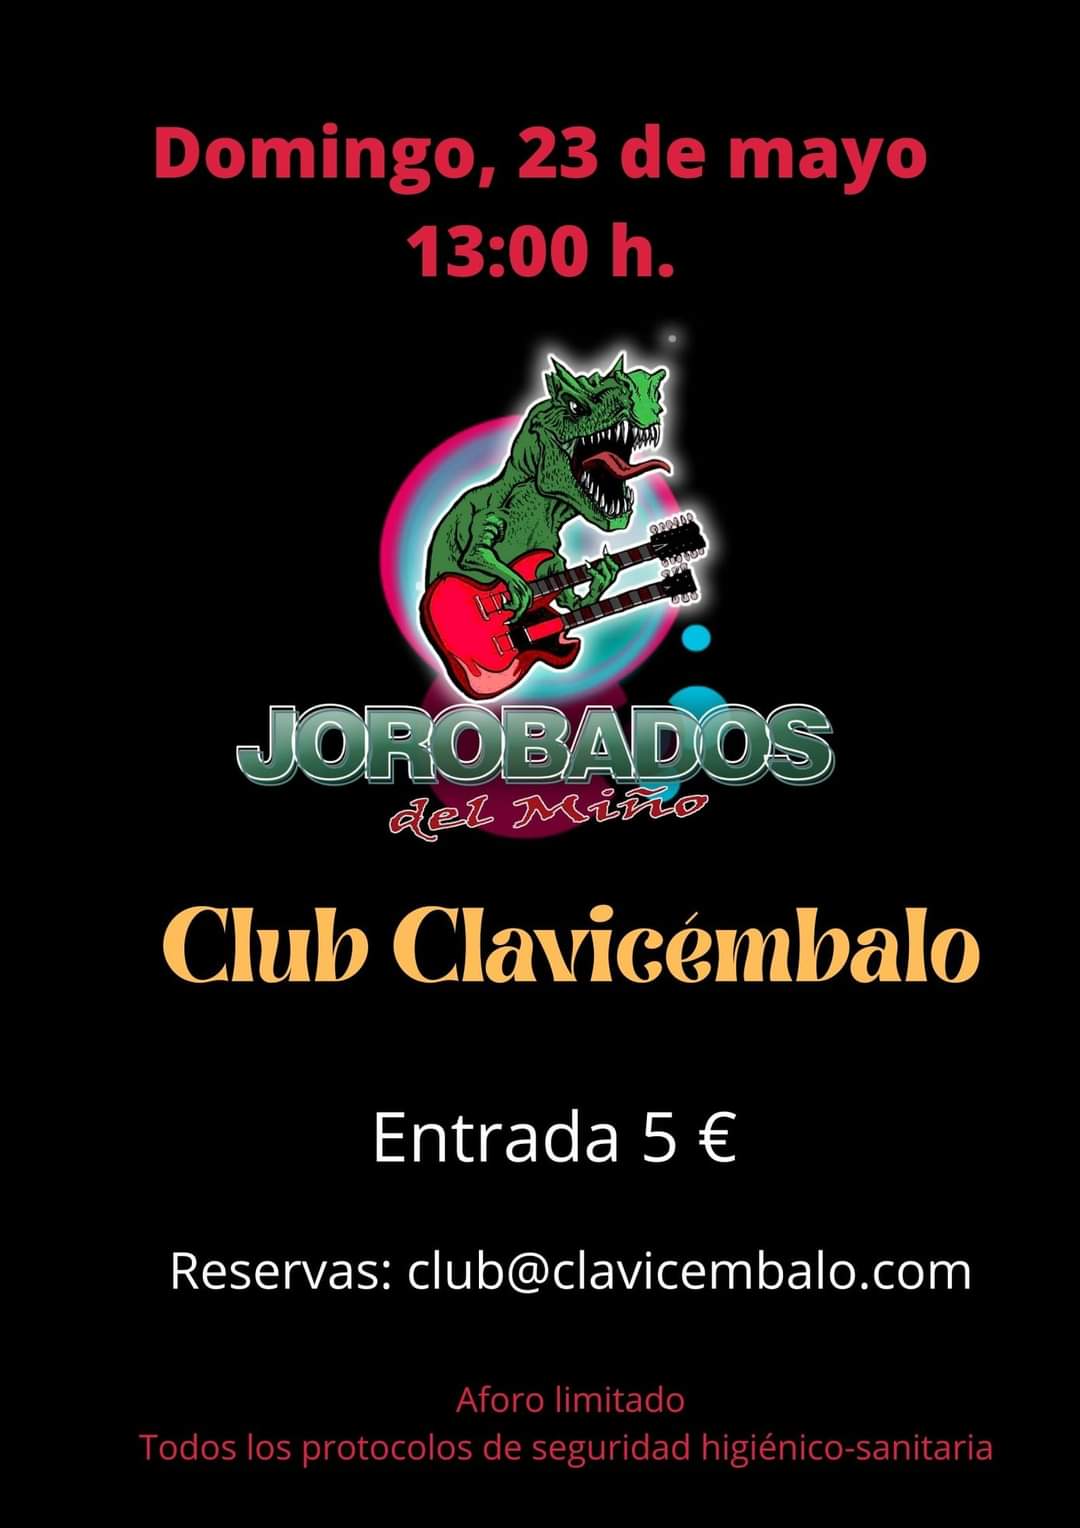 Club Clavicémbalo - Jorobados del Miño en concierto